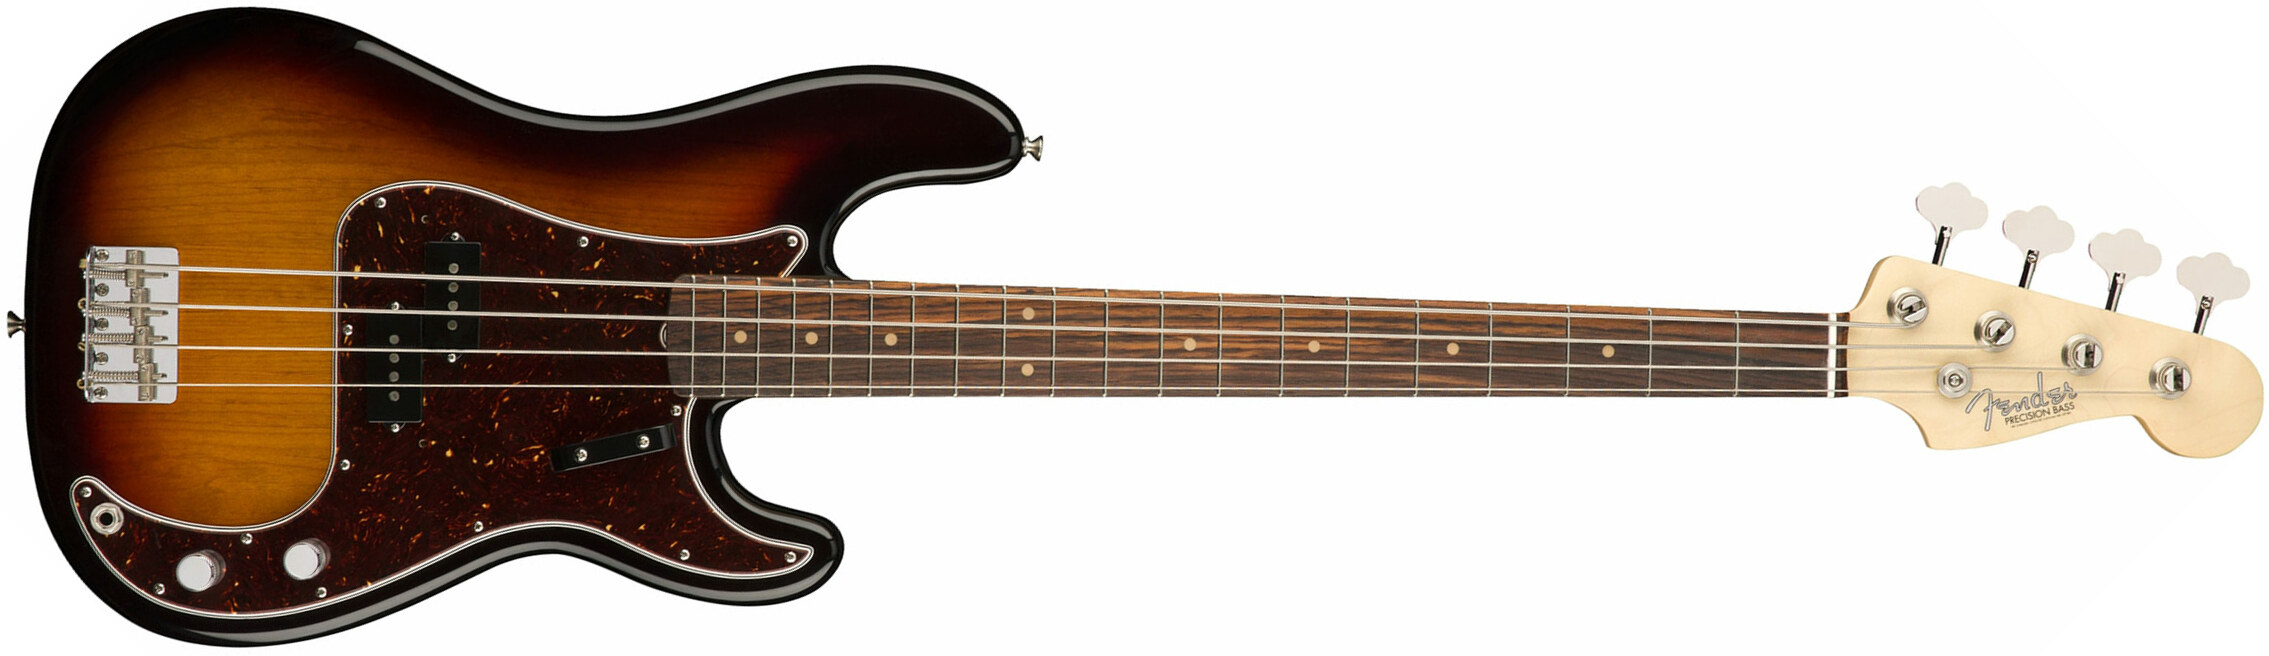 Fender Precision Bass '60s American Original Usa Rw - 3-color Sunburst - Basse Électrique Solid Body - Main picture